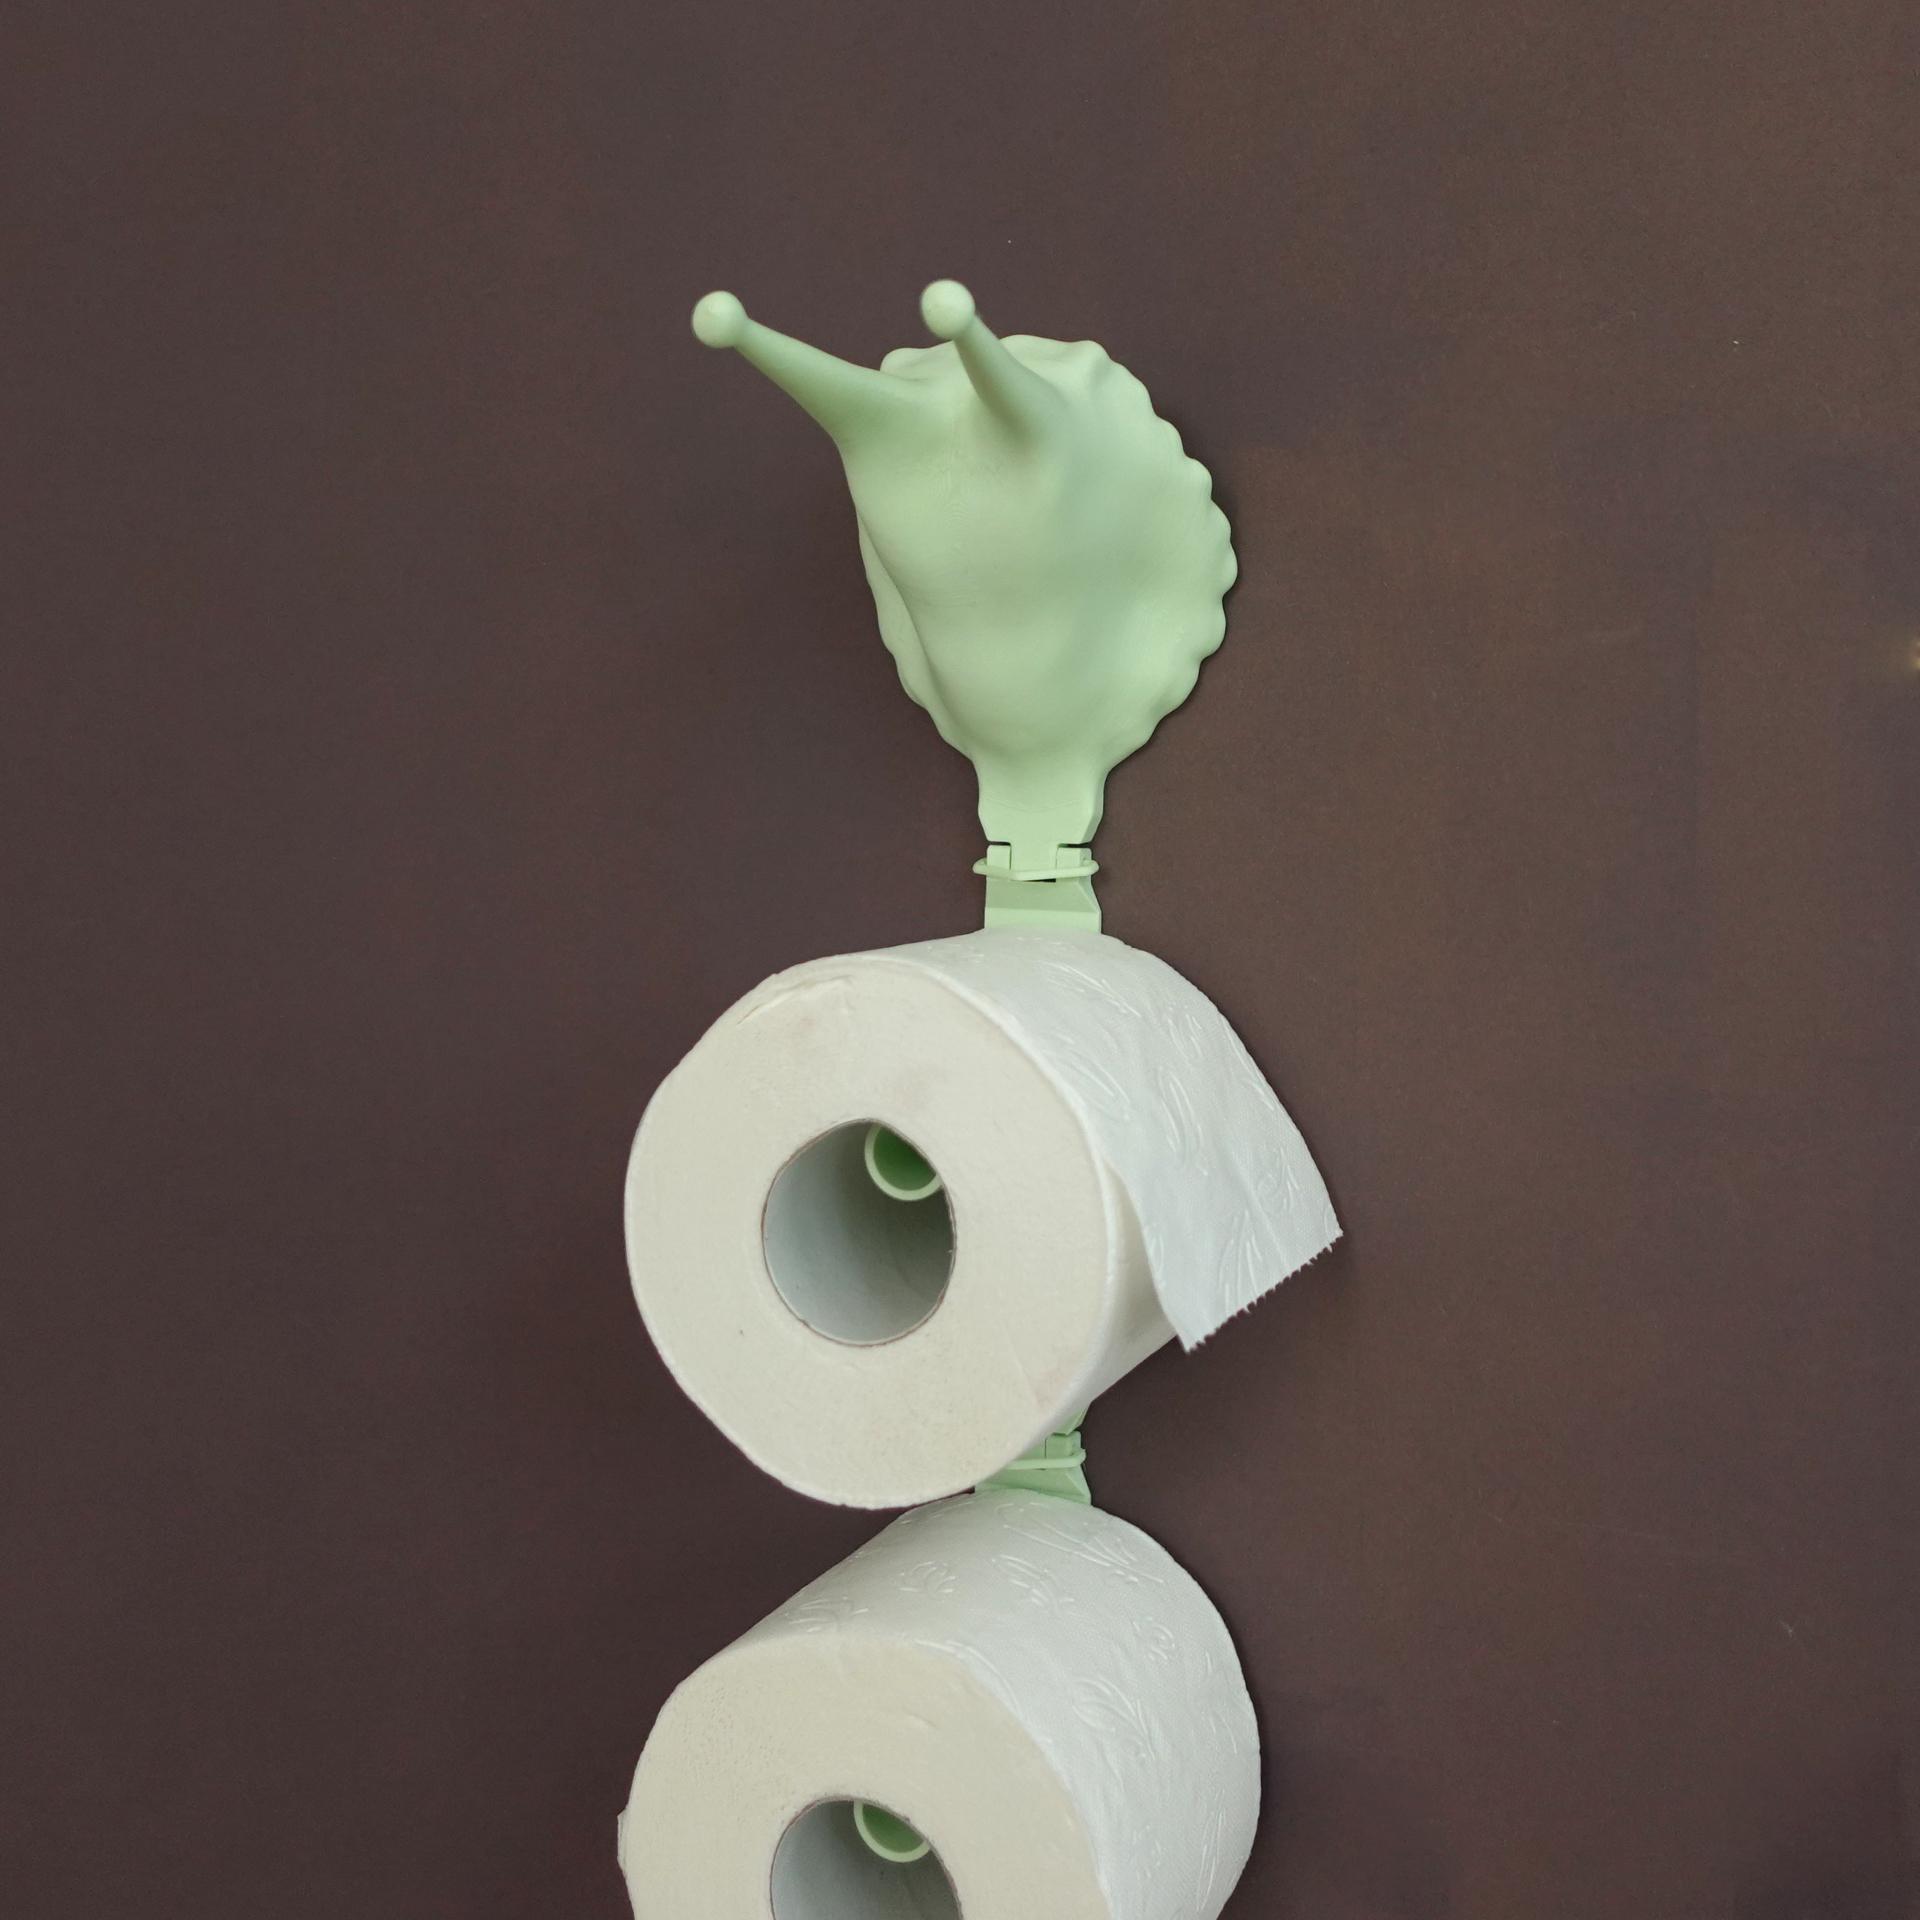 Toilet paper storage “snail” 3d model